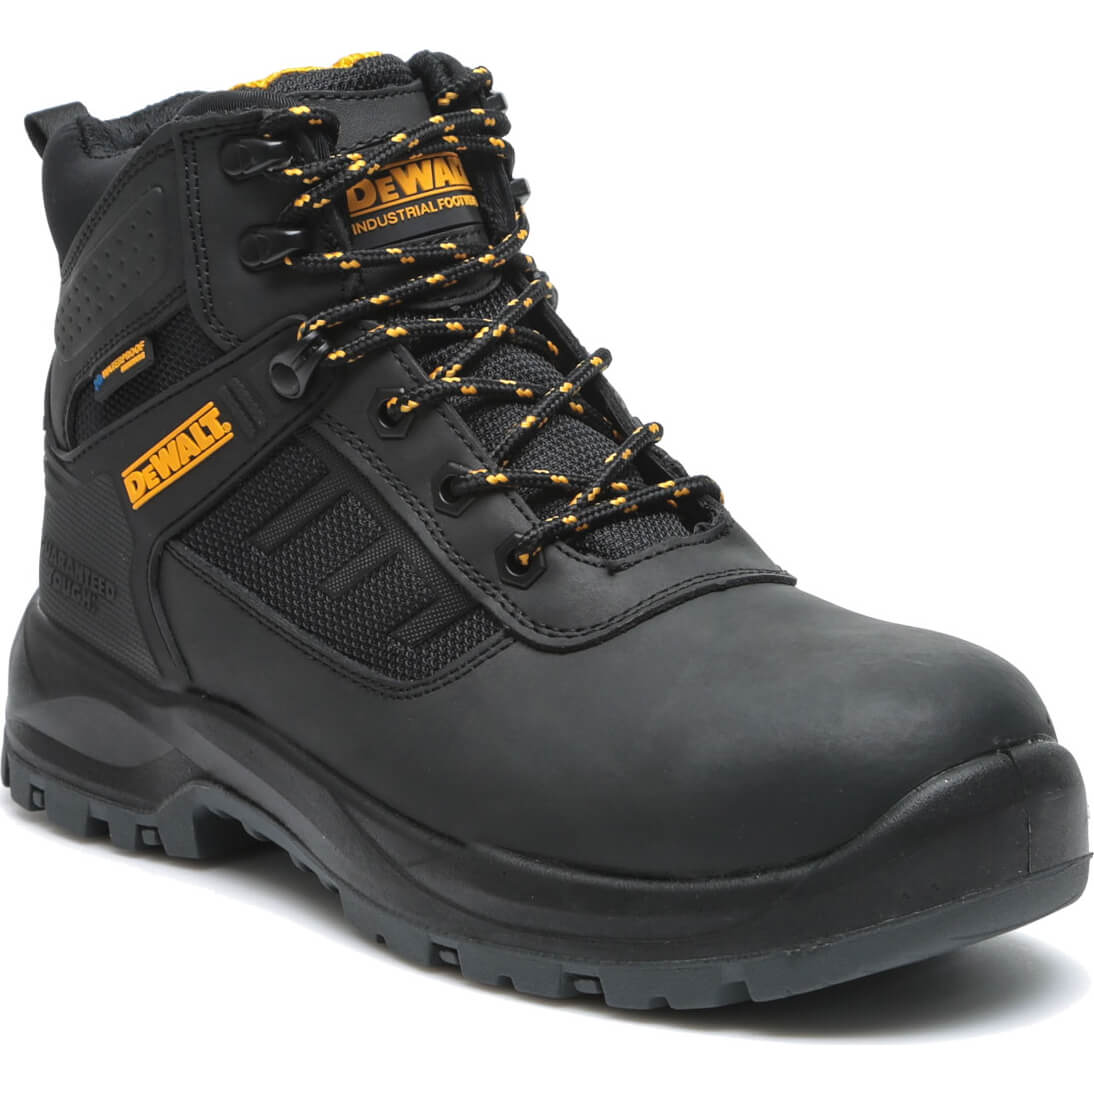 Photos - Safety Equipment DeWALT Douglas Waterproof Safety Boots Black Size 7 